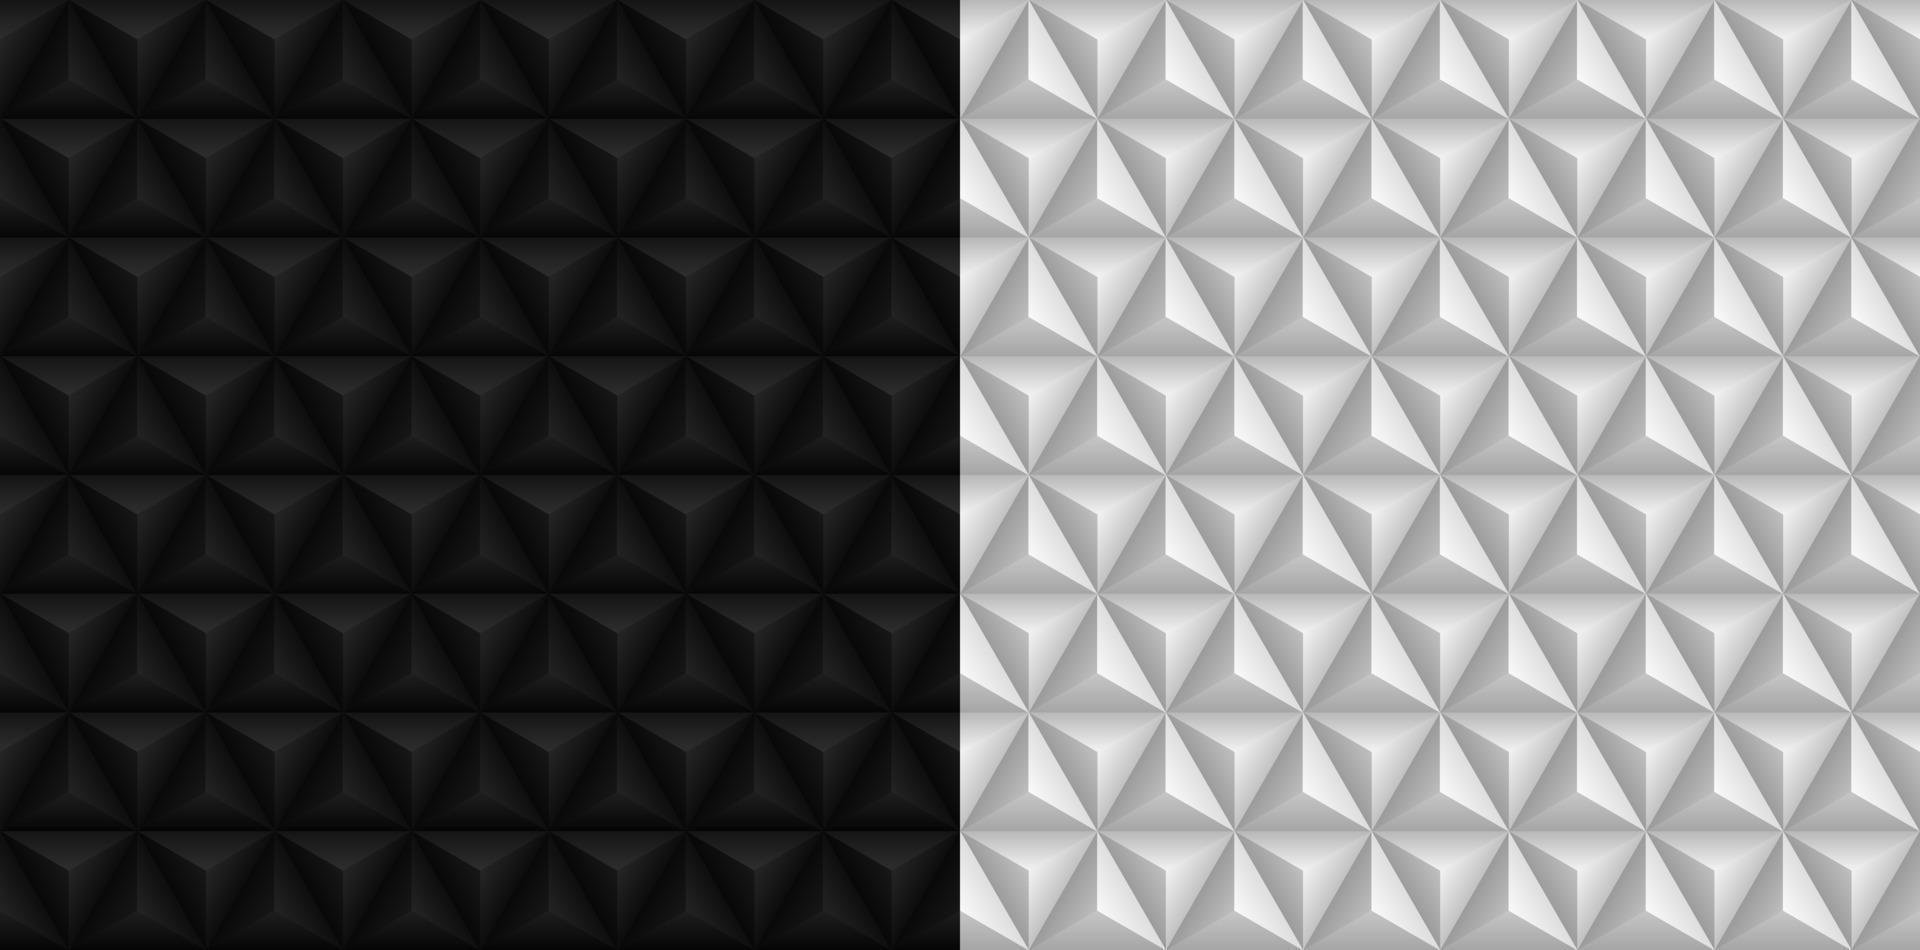 Triángulo 3d blanco y negro fondos patrones sin fisuras vector